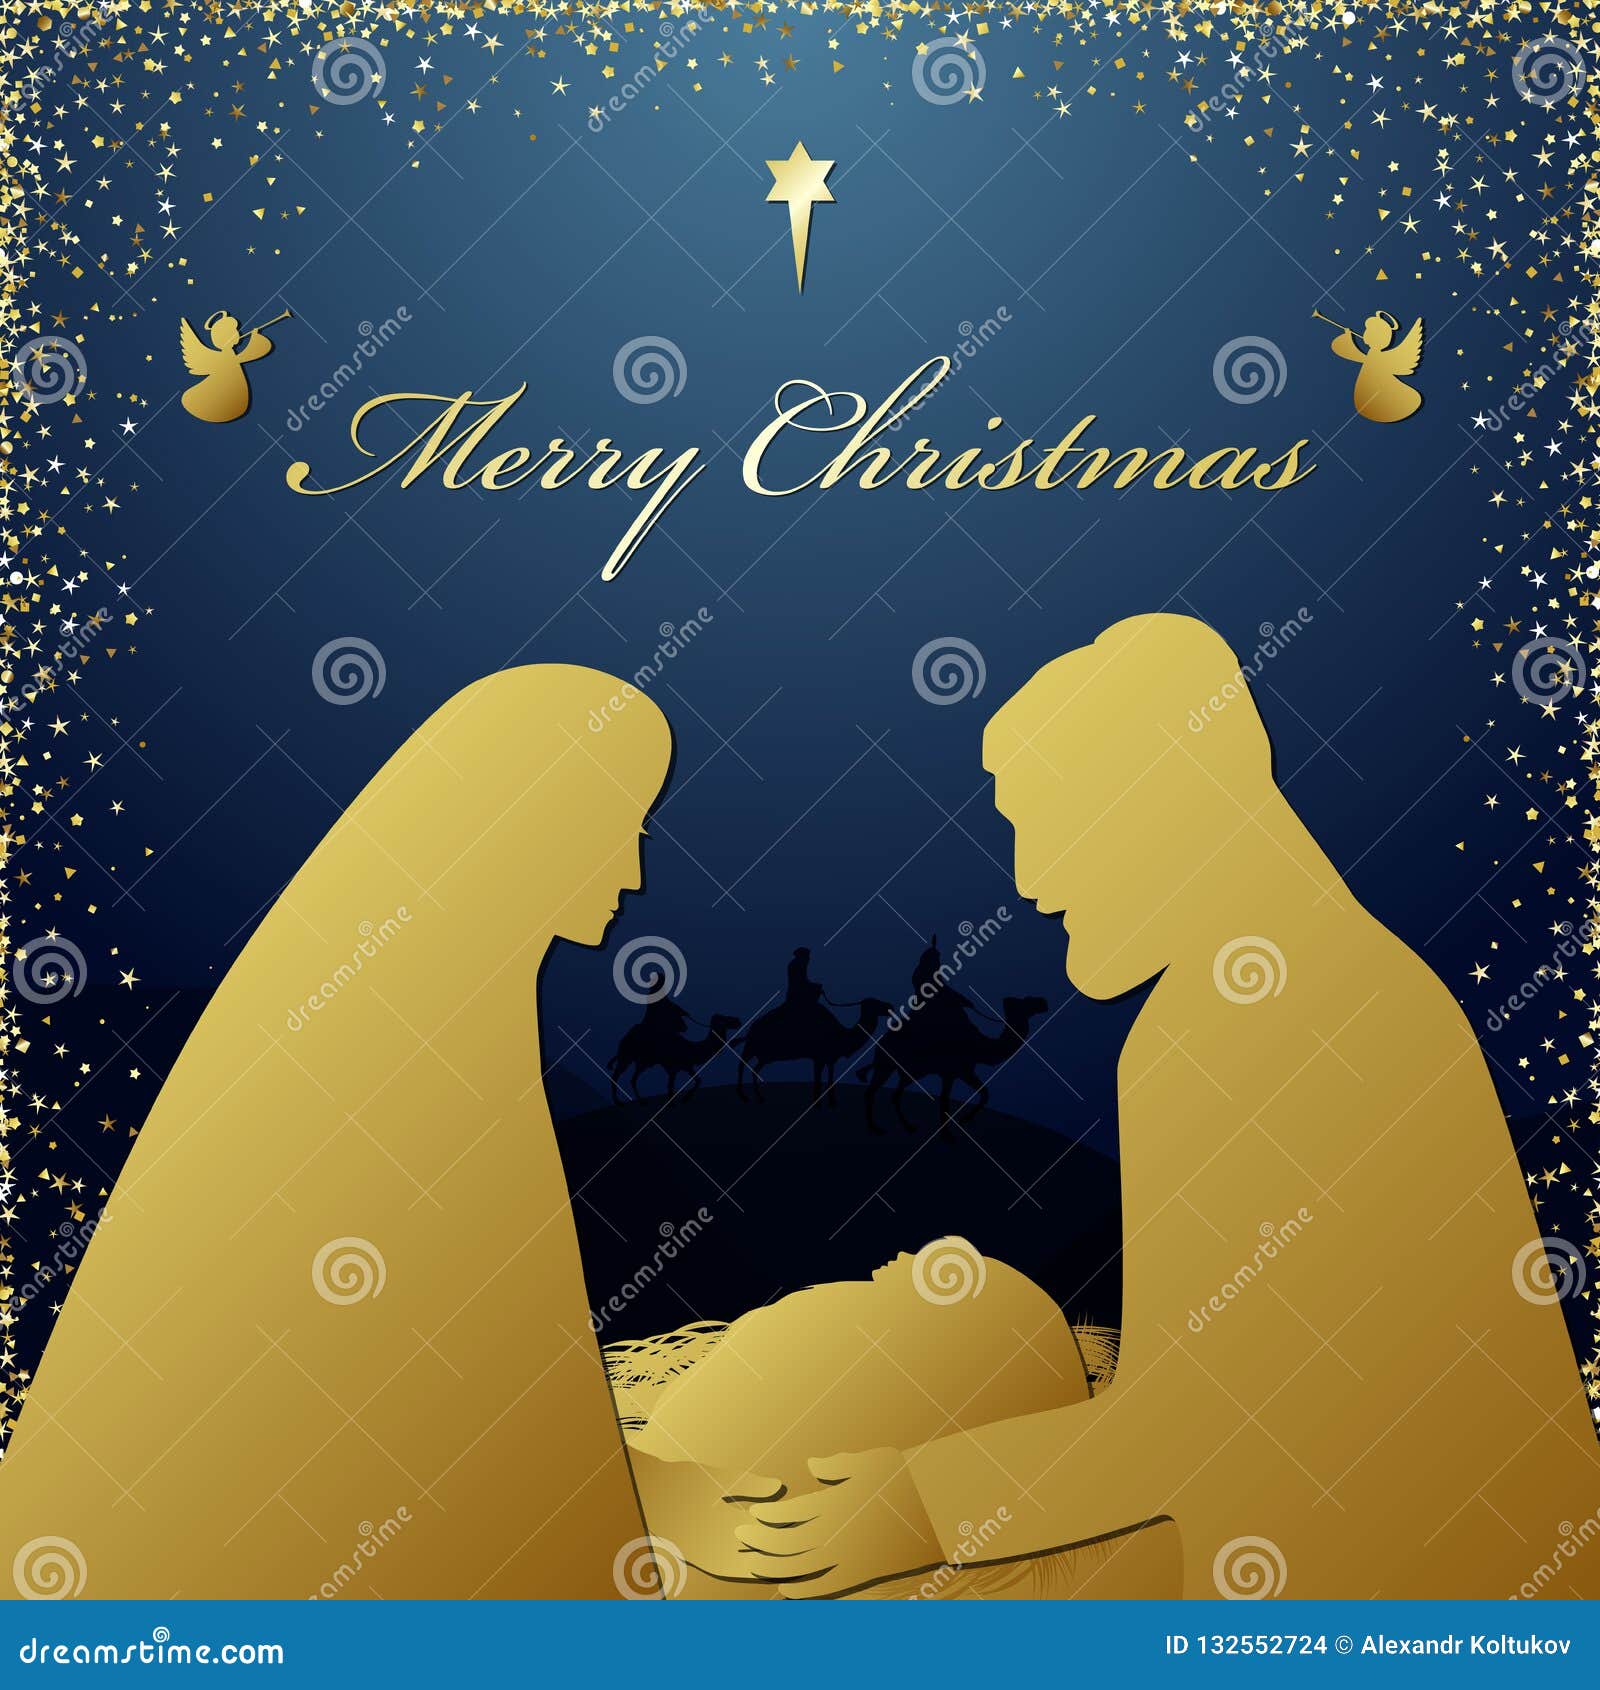 Buon Natale Religioso.Saluti Religiosi Di Notte Santa Di Buon Natale Illustrazione Vettoriale Illustrazione Di Natale Scheda 132552724